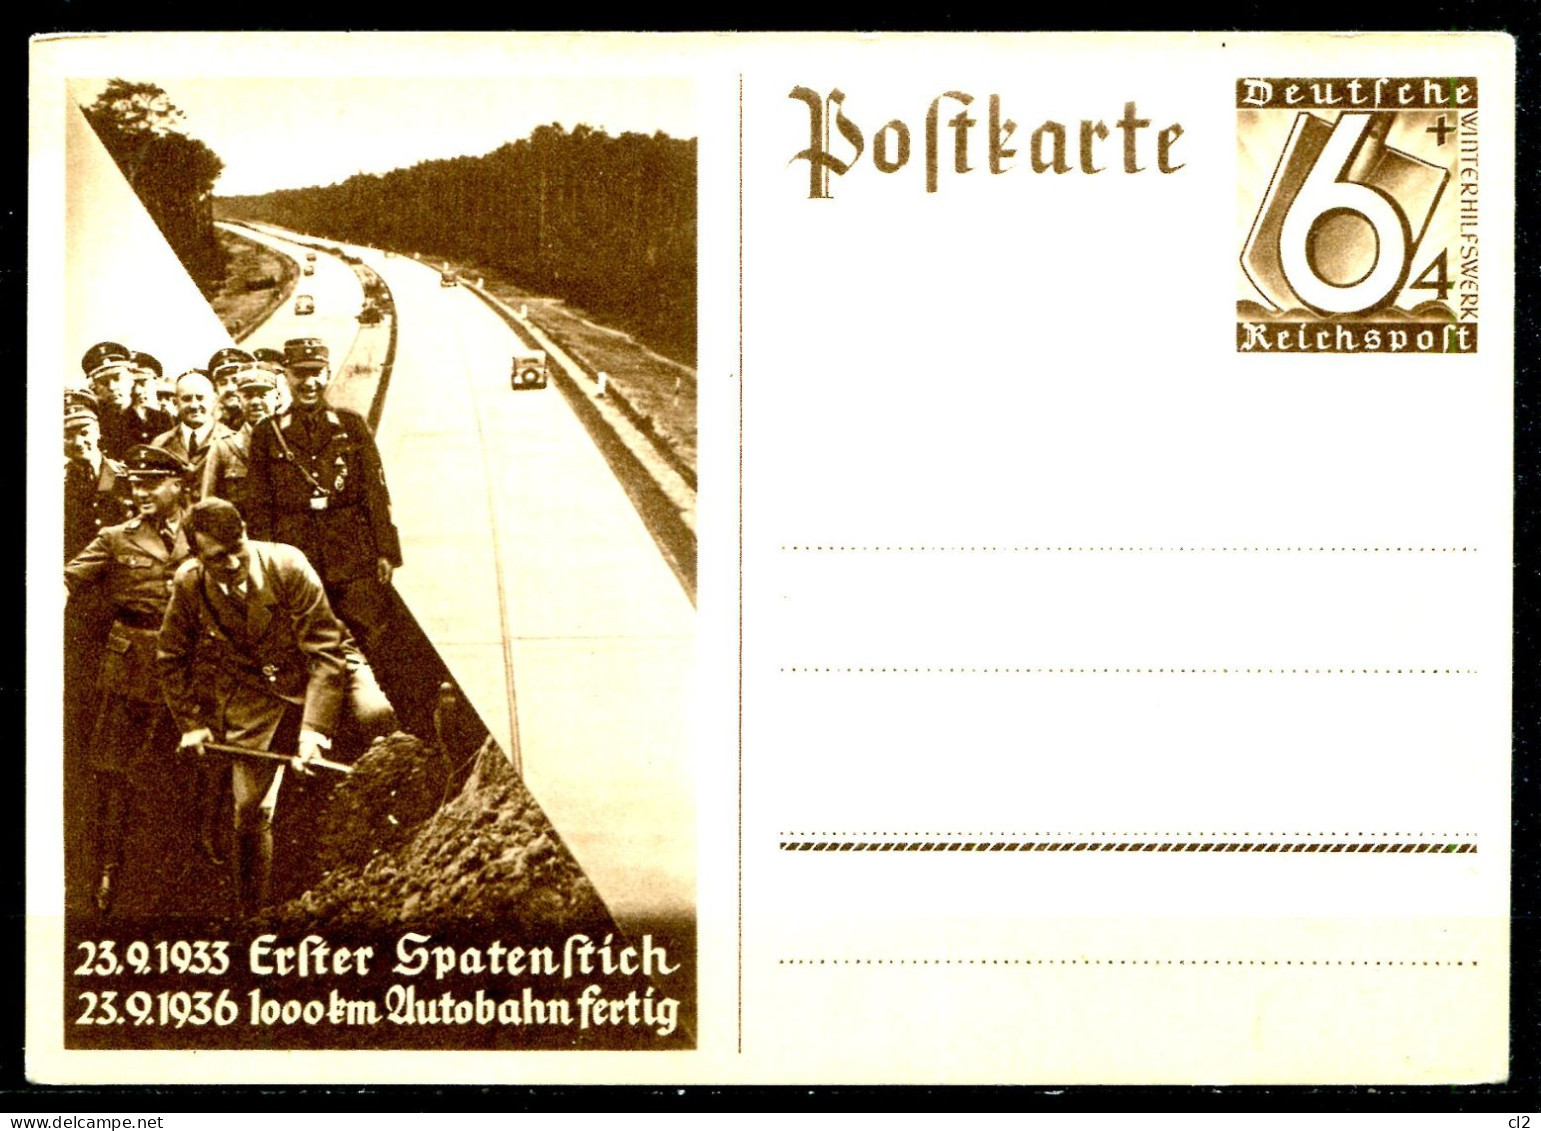 ALLEMAGNE - Entier Postal (Ganzsache) Mi P 263 - Postkarten